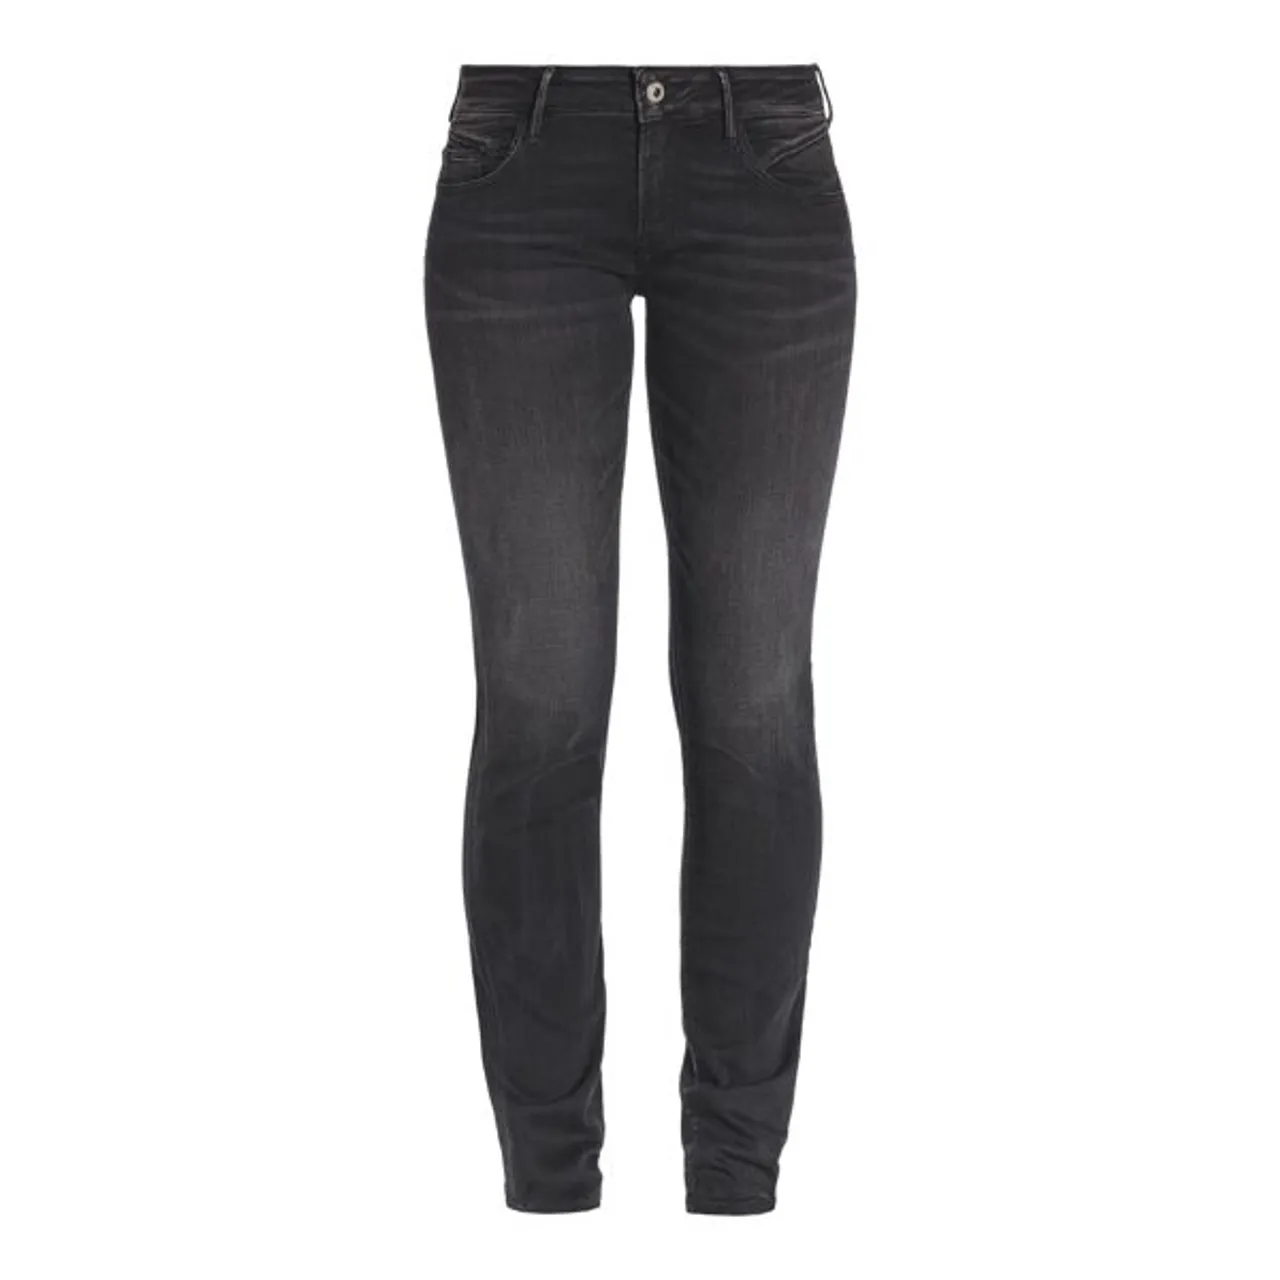 Slim-fit-Jeans LE TEMPS DES CERISES "PULPREG" Gr. 25, EURO-Größen, schwarz Damen Jeans Röhrenjeans